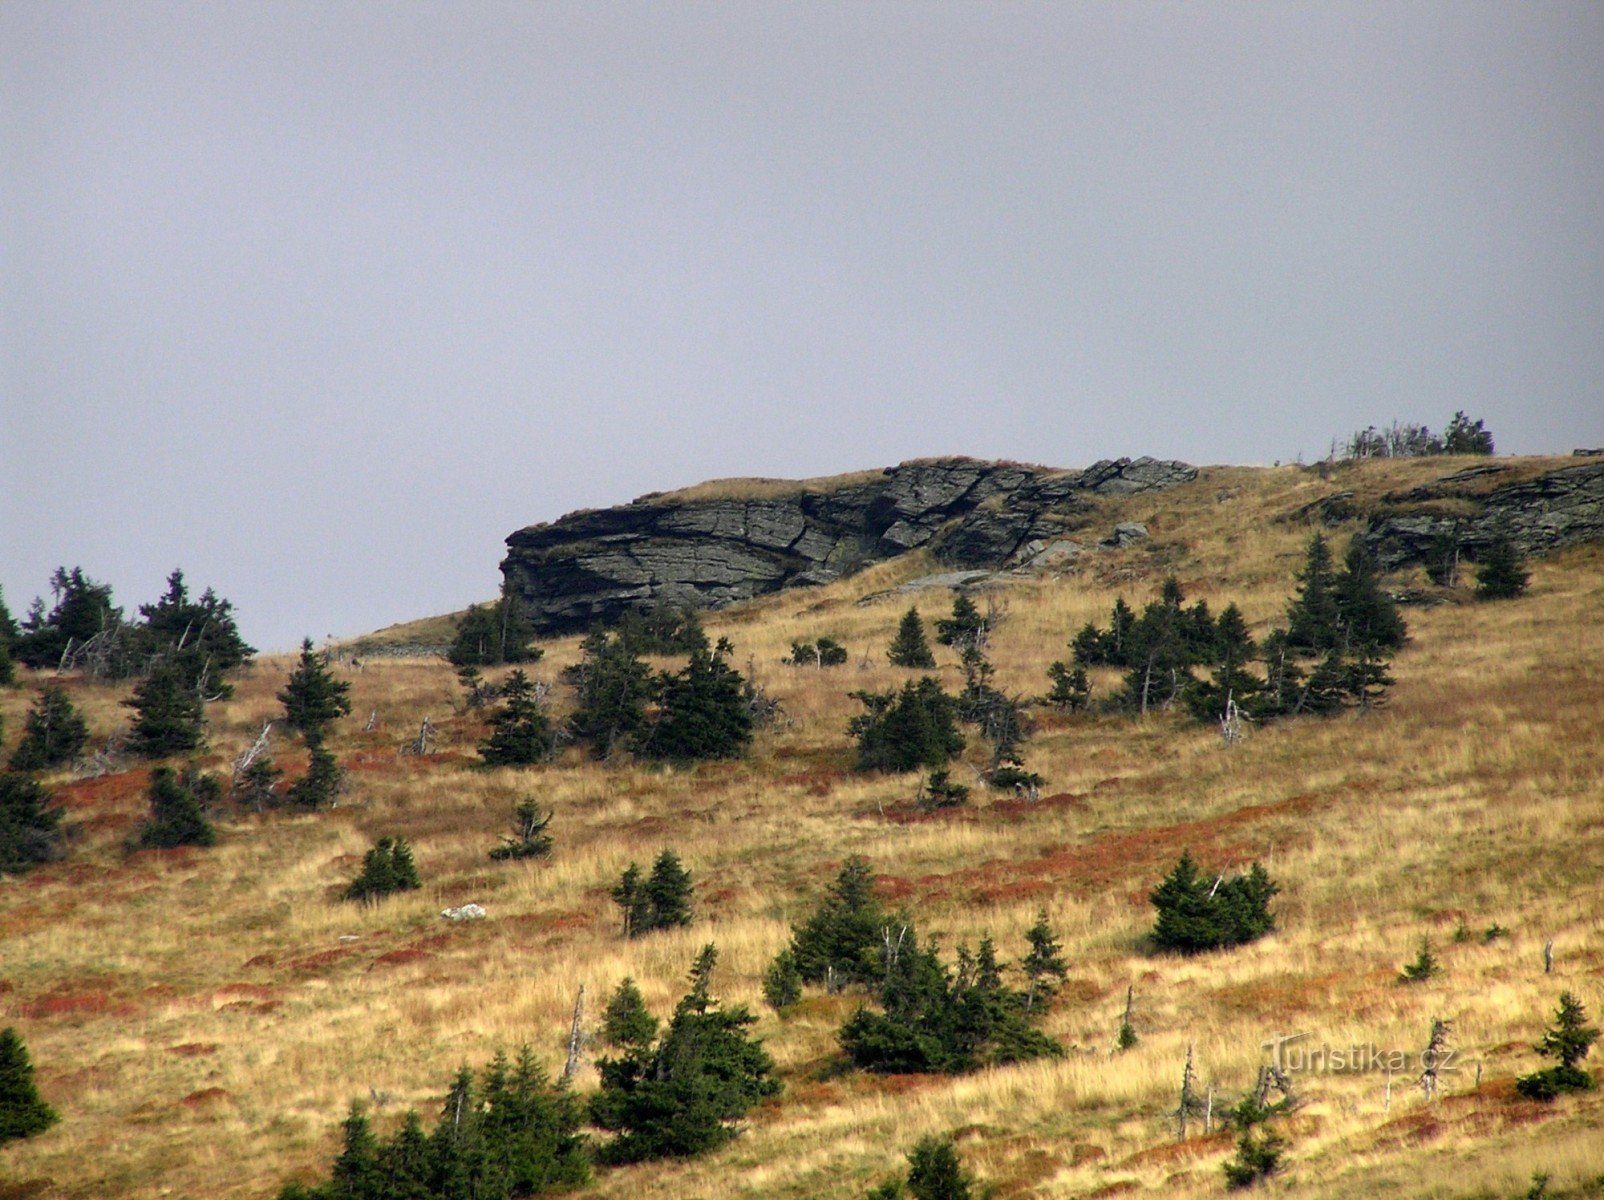 Tabular Rocks (oktober 2006)